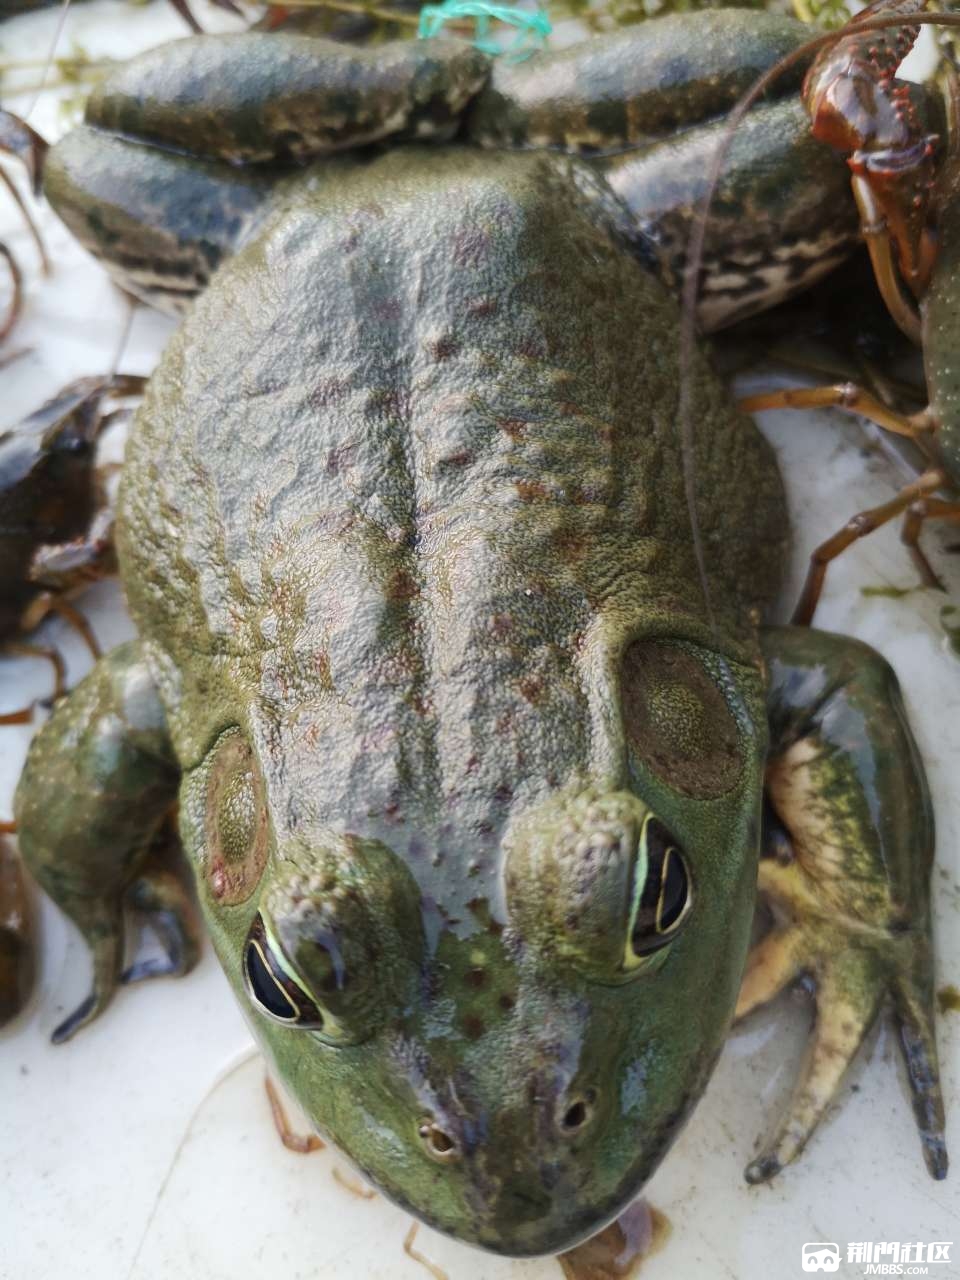 今天又下了一只大牛蛙